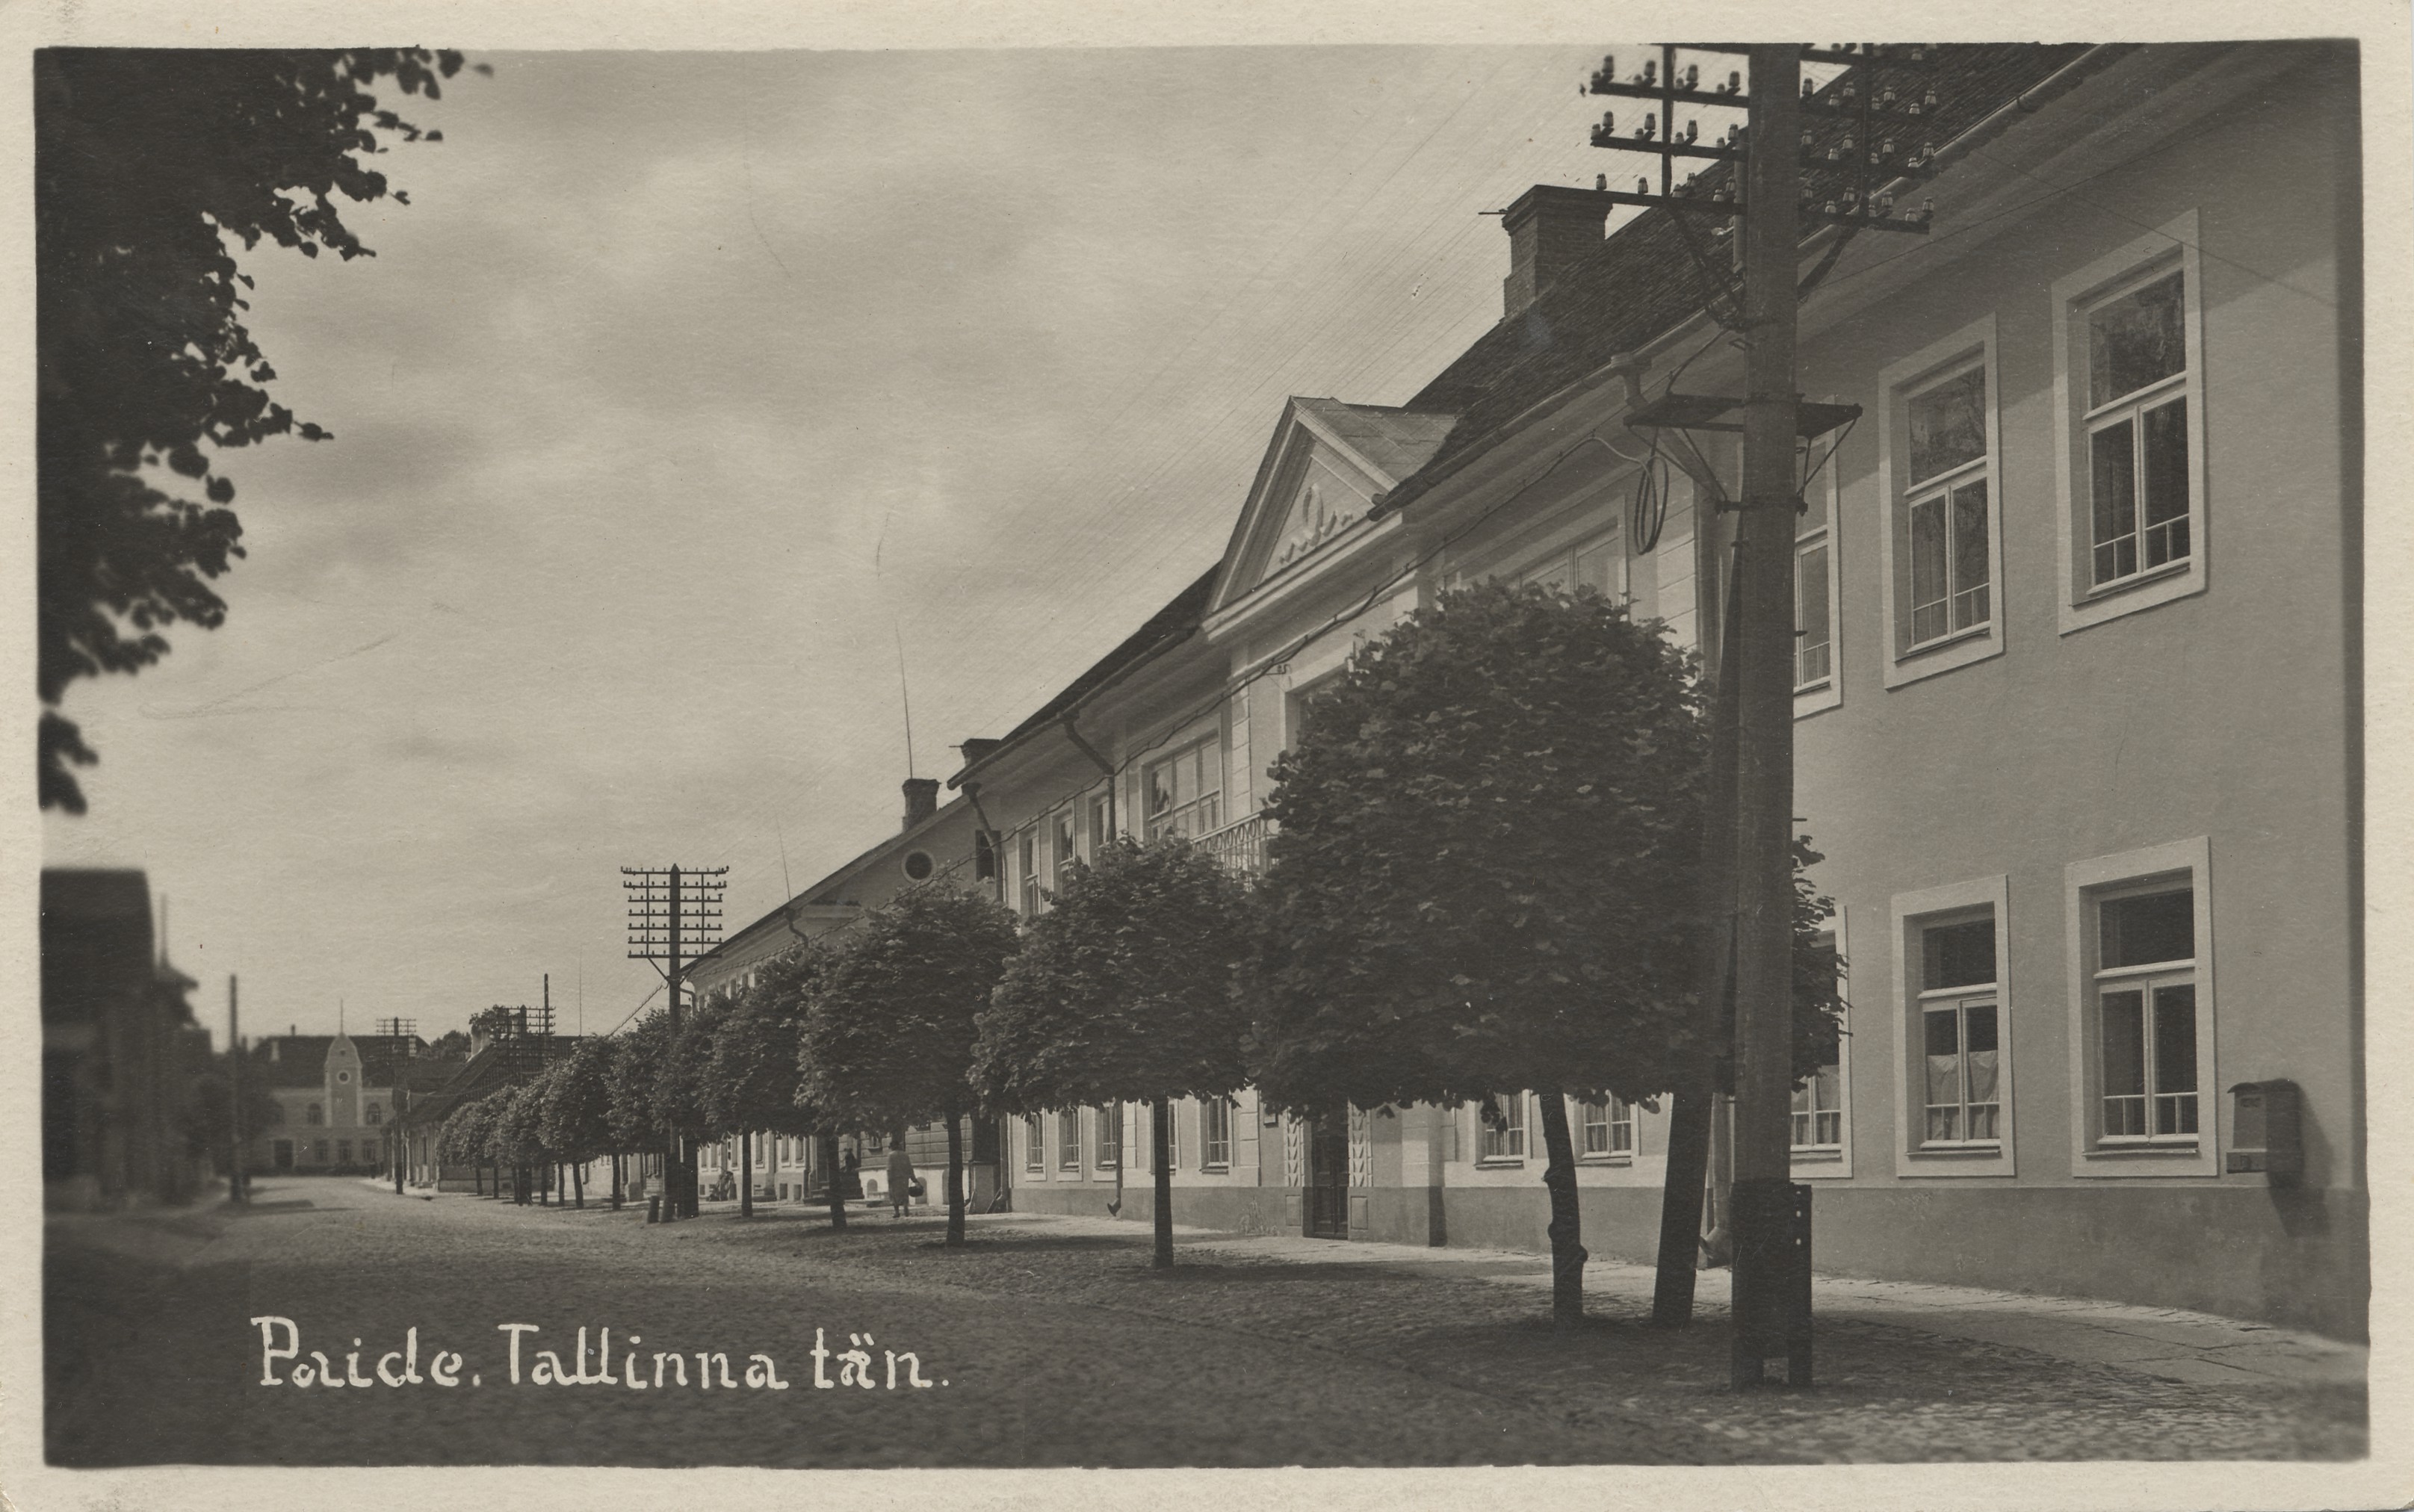 Paide Tallinn's Day